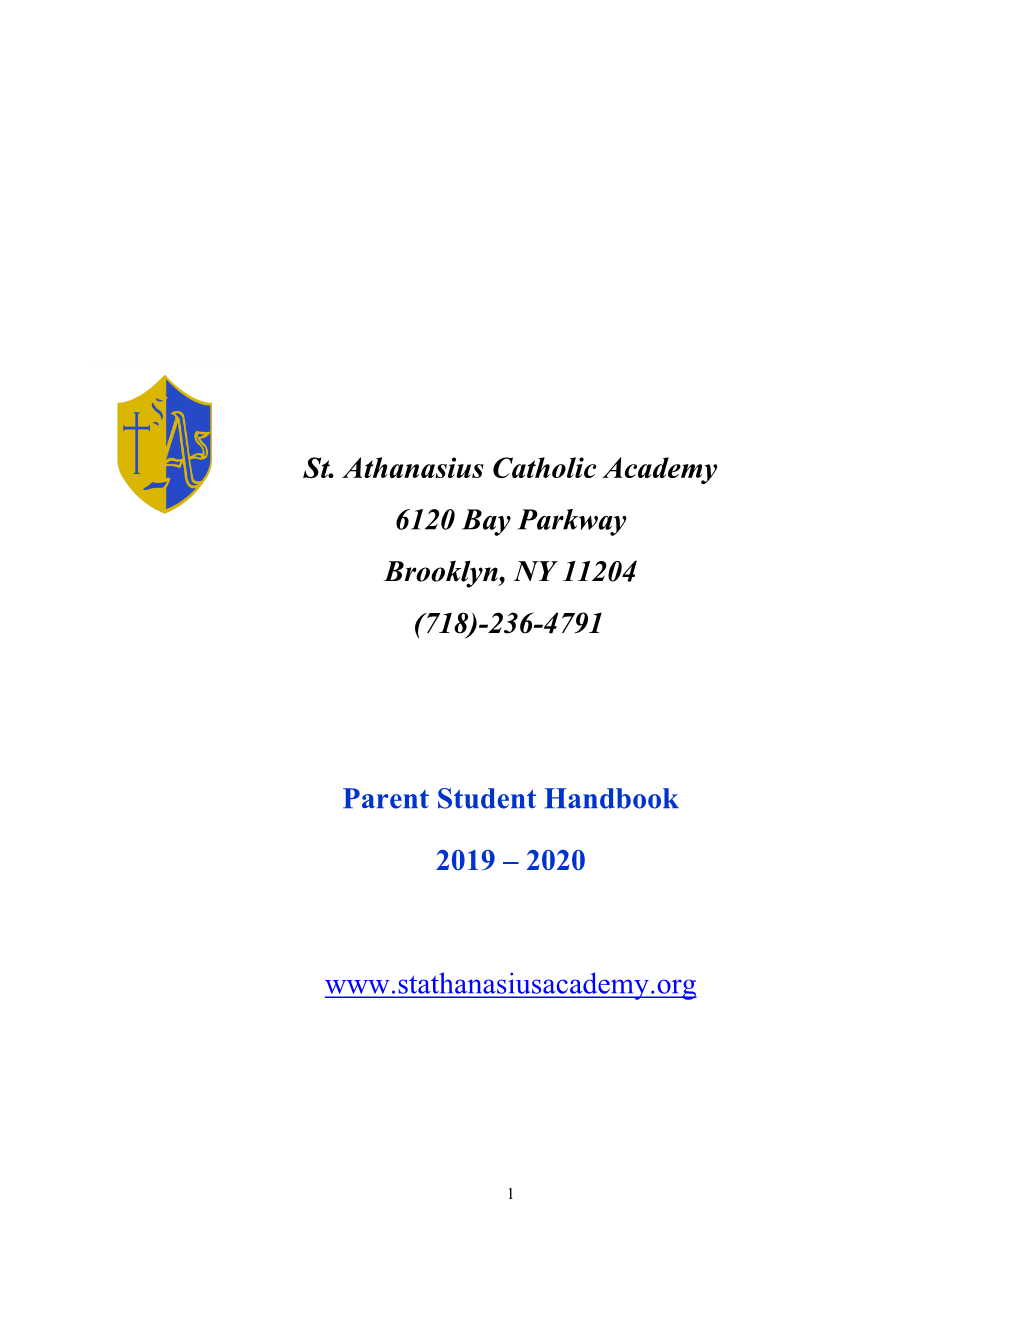 St. Athanasius Catholic Academy 6120 Bay Parkway Brooklyn, NY